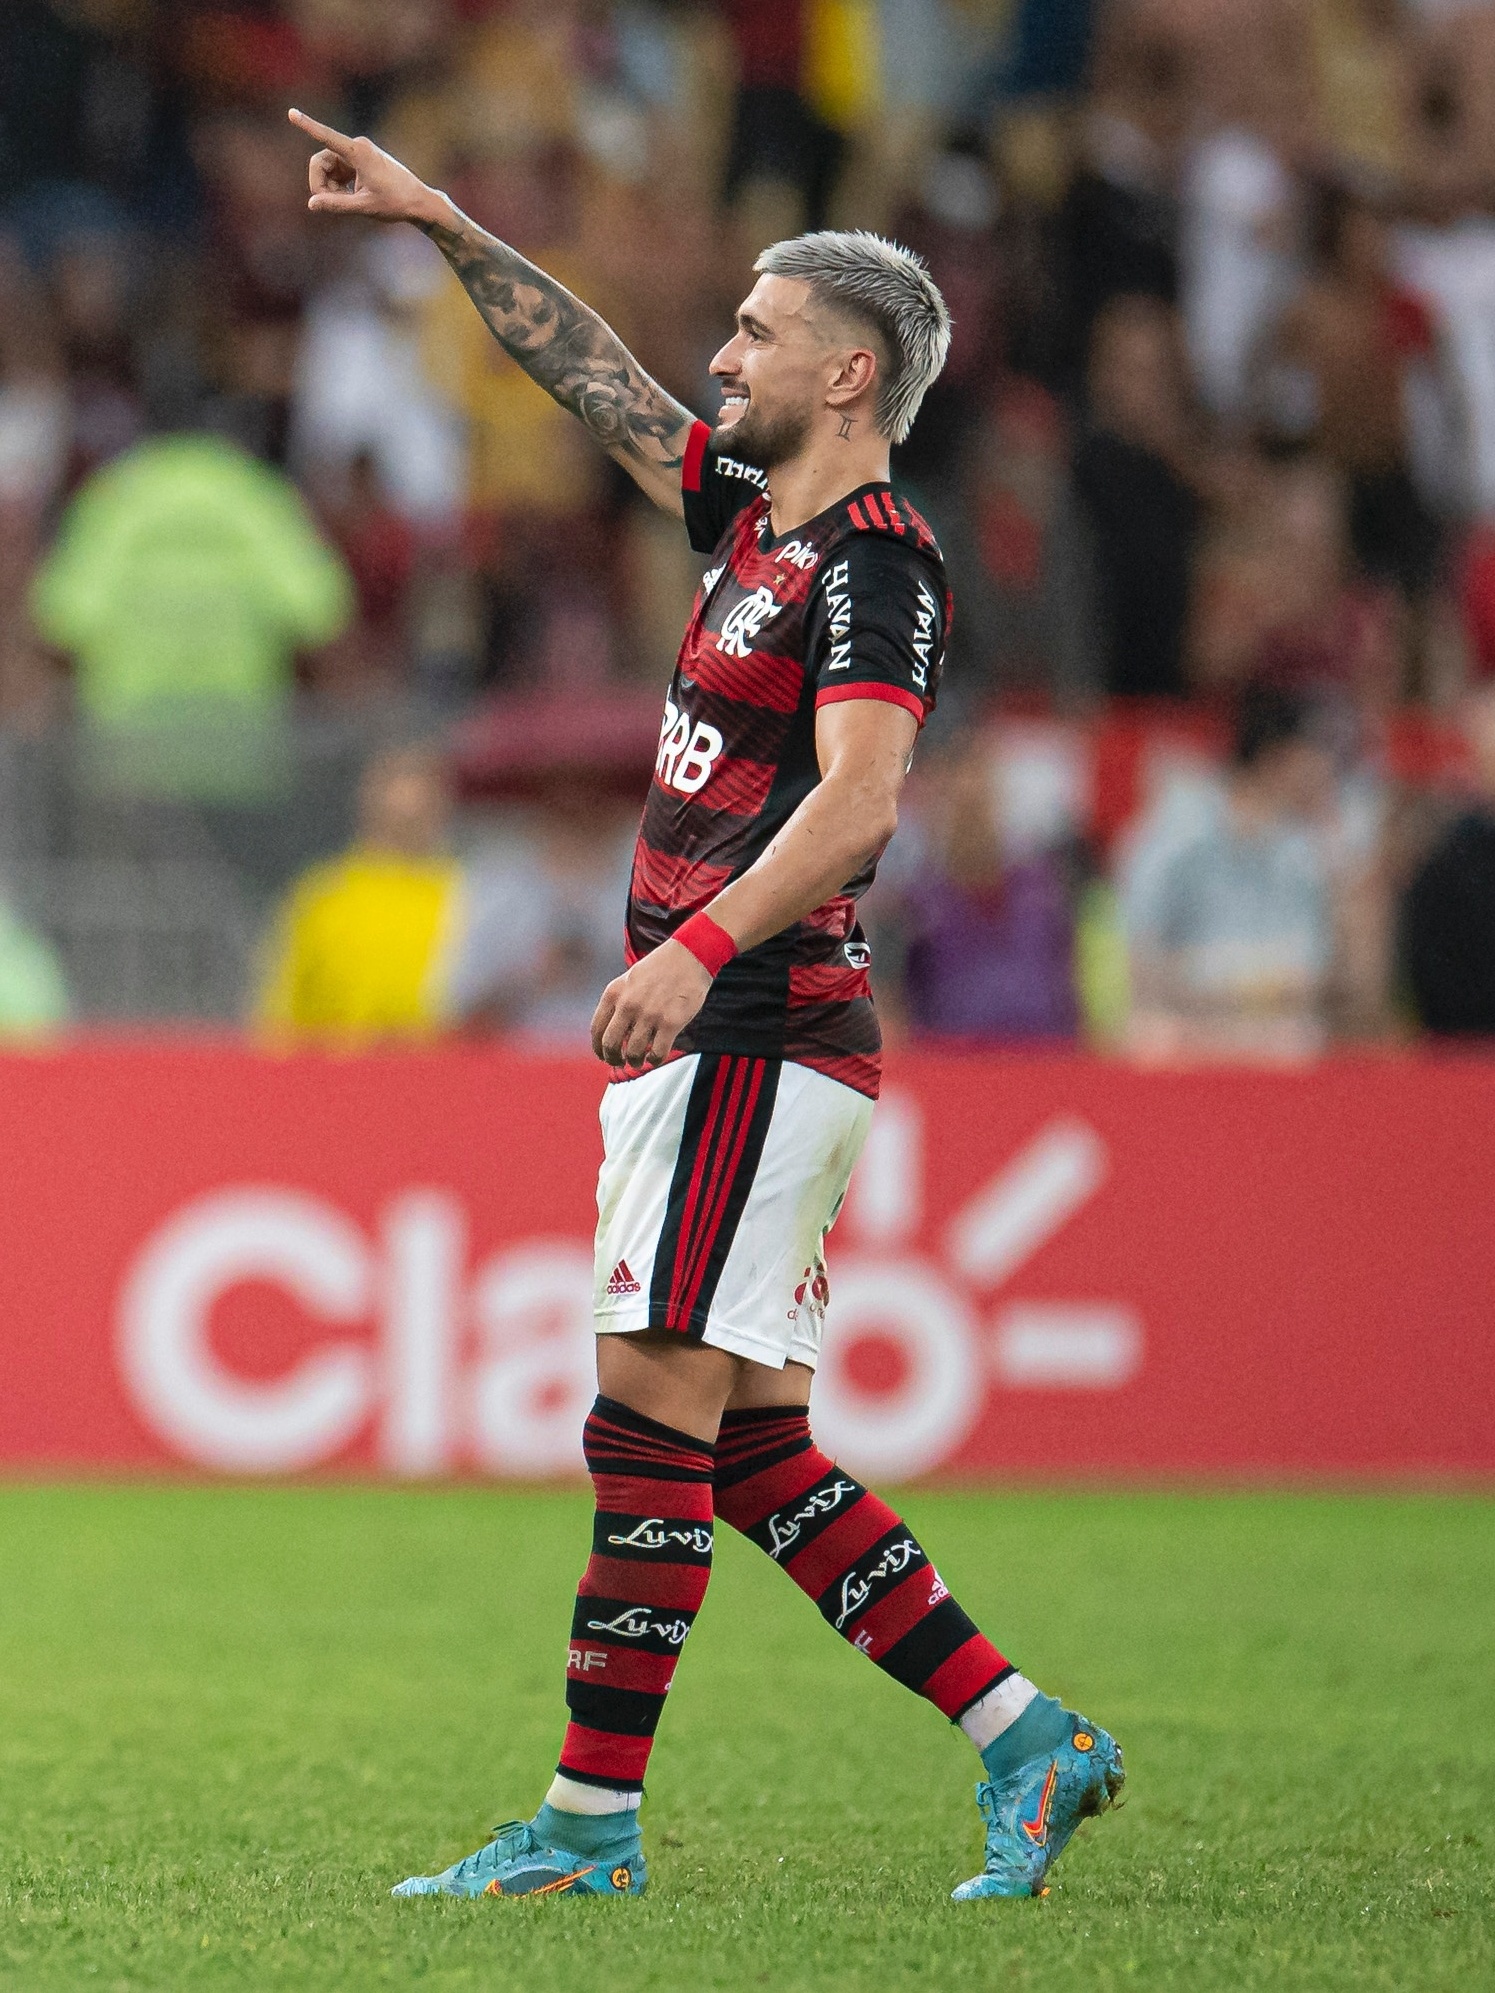 Os maiores artilheiros estrangeiros do Flamengo